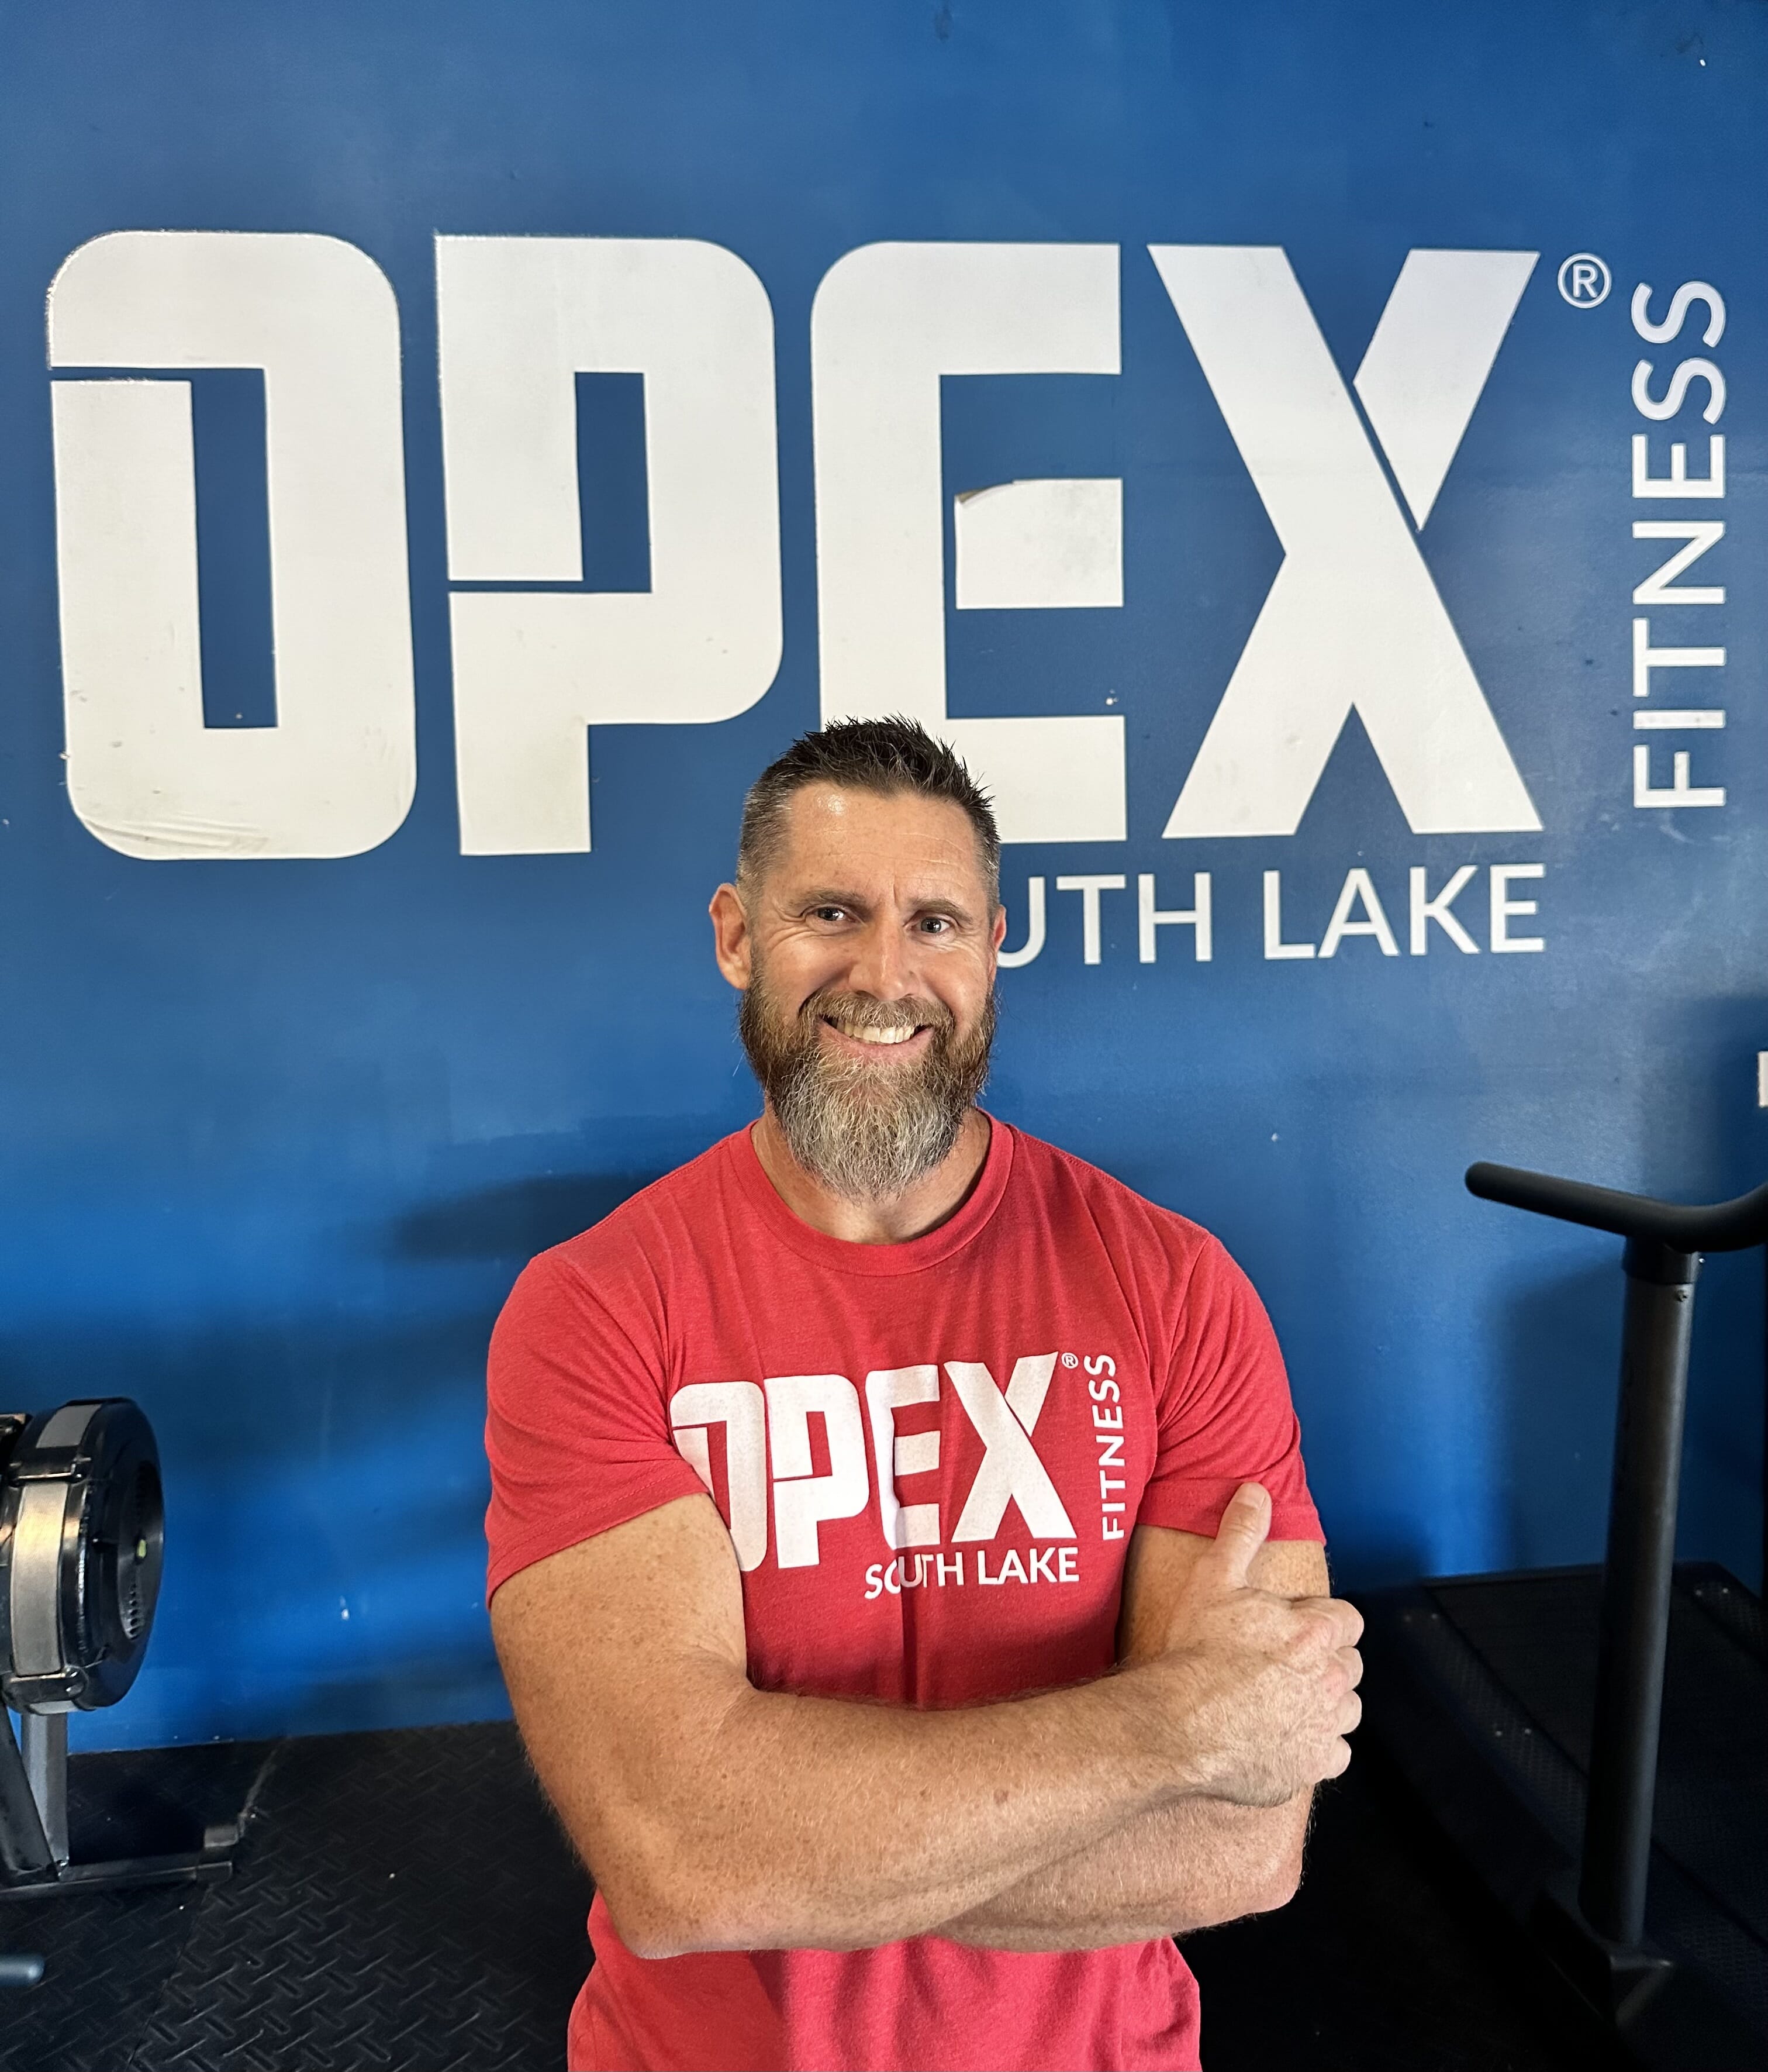 OPEX South Lake | Brett Eddy  Owner / Head Coach